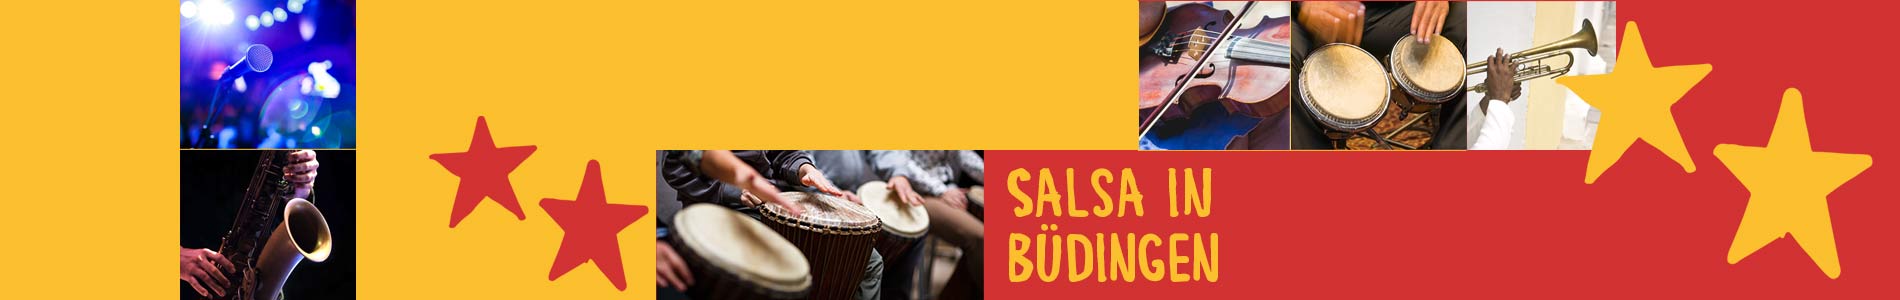 Salsa in Büdingen – Salsa lernen und tanzen, Tanzkurse, Partys, Veranstaltungen